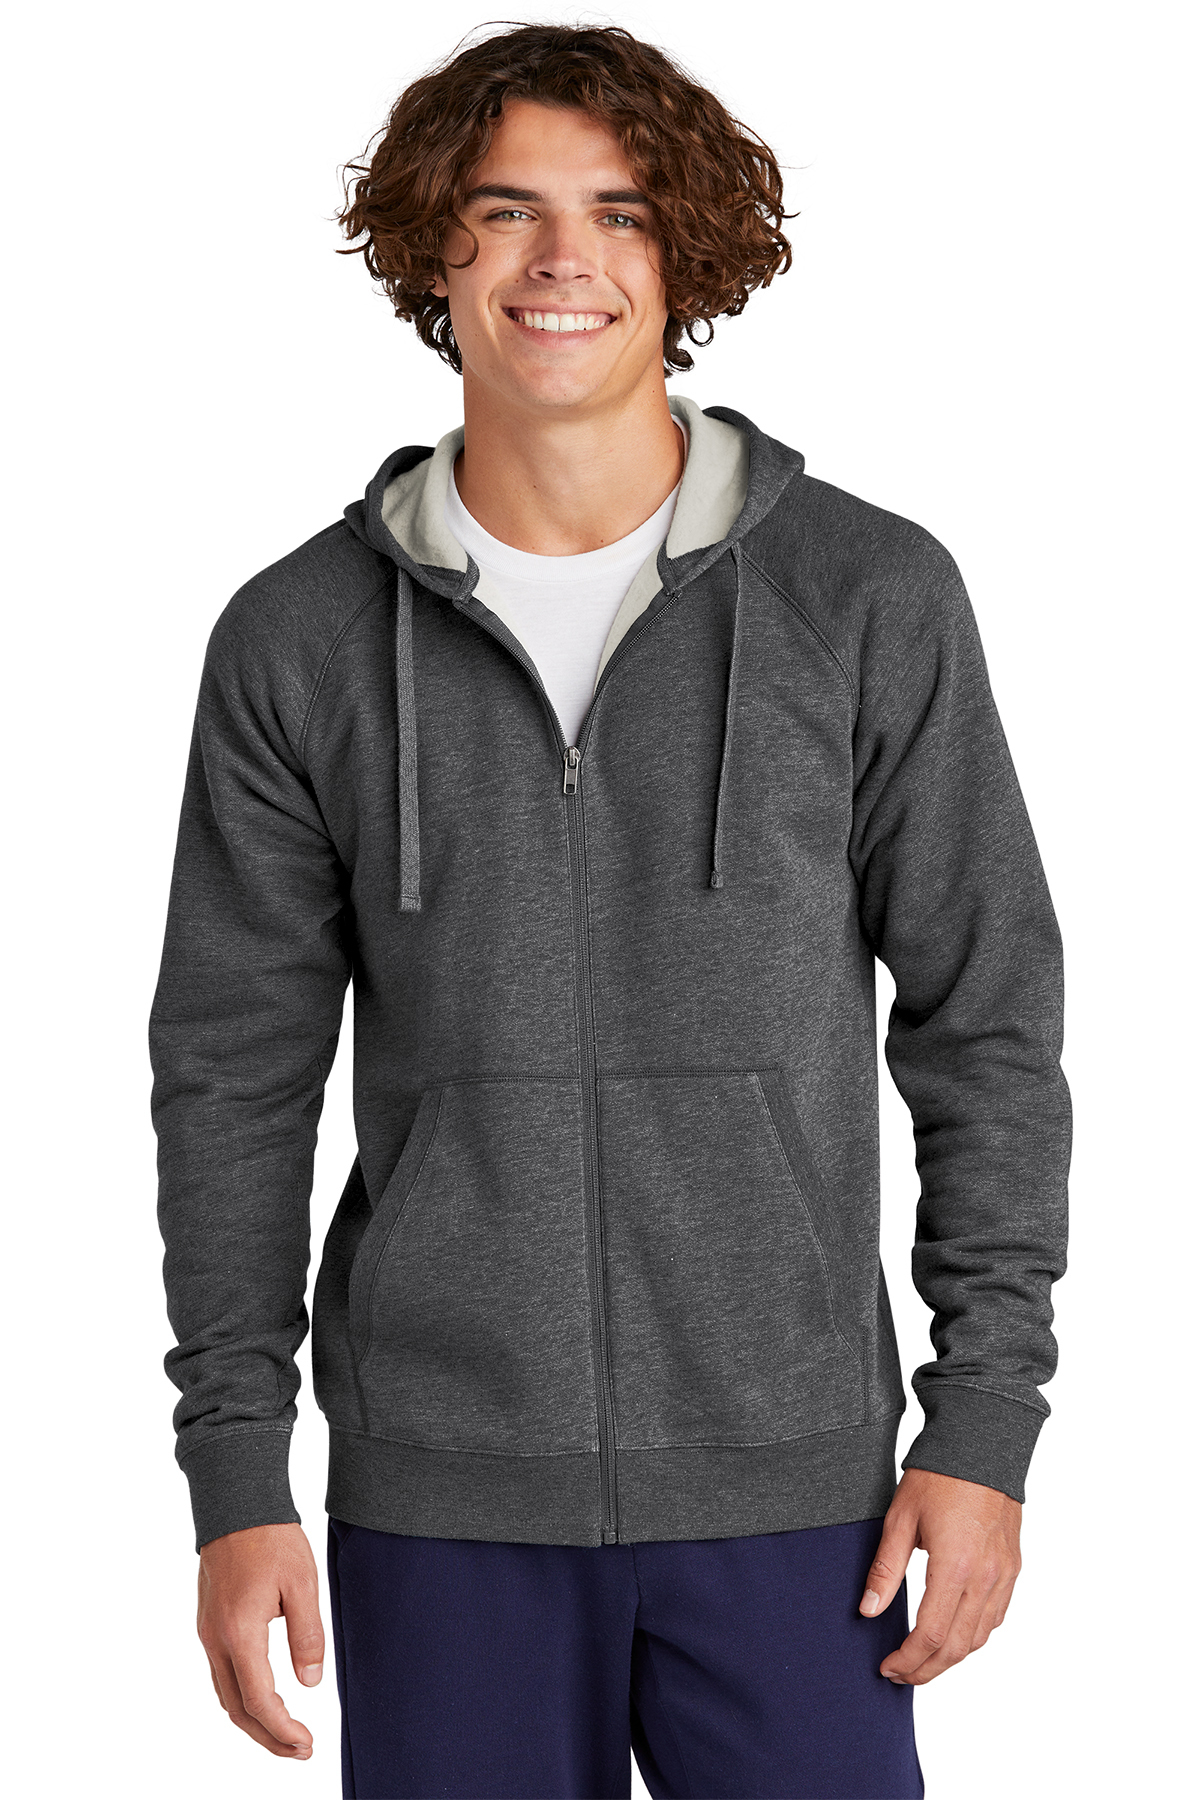 Sport Tek No Hood Full Zip Sweatshirt Fleece